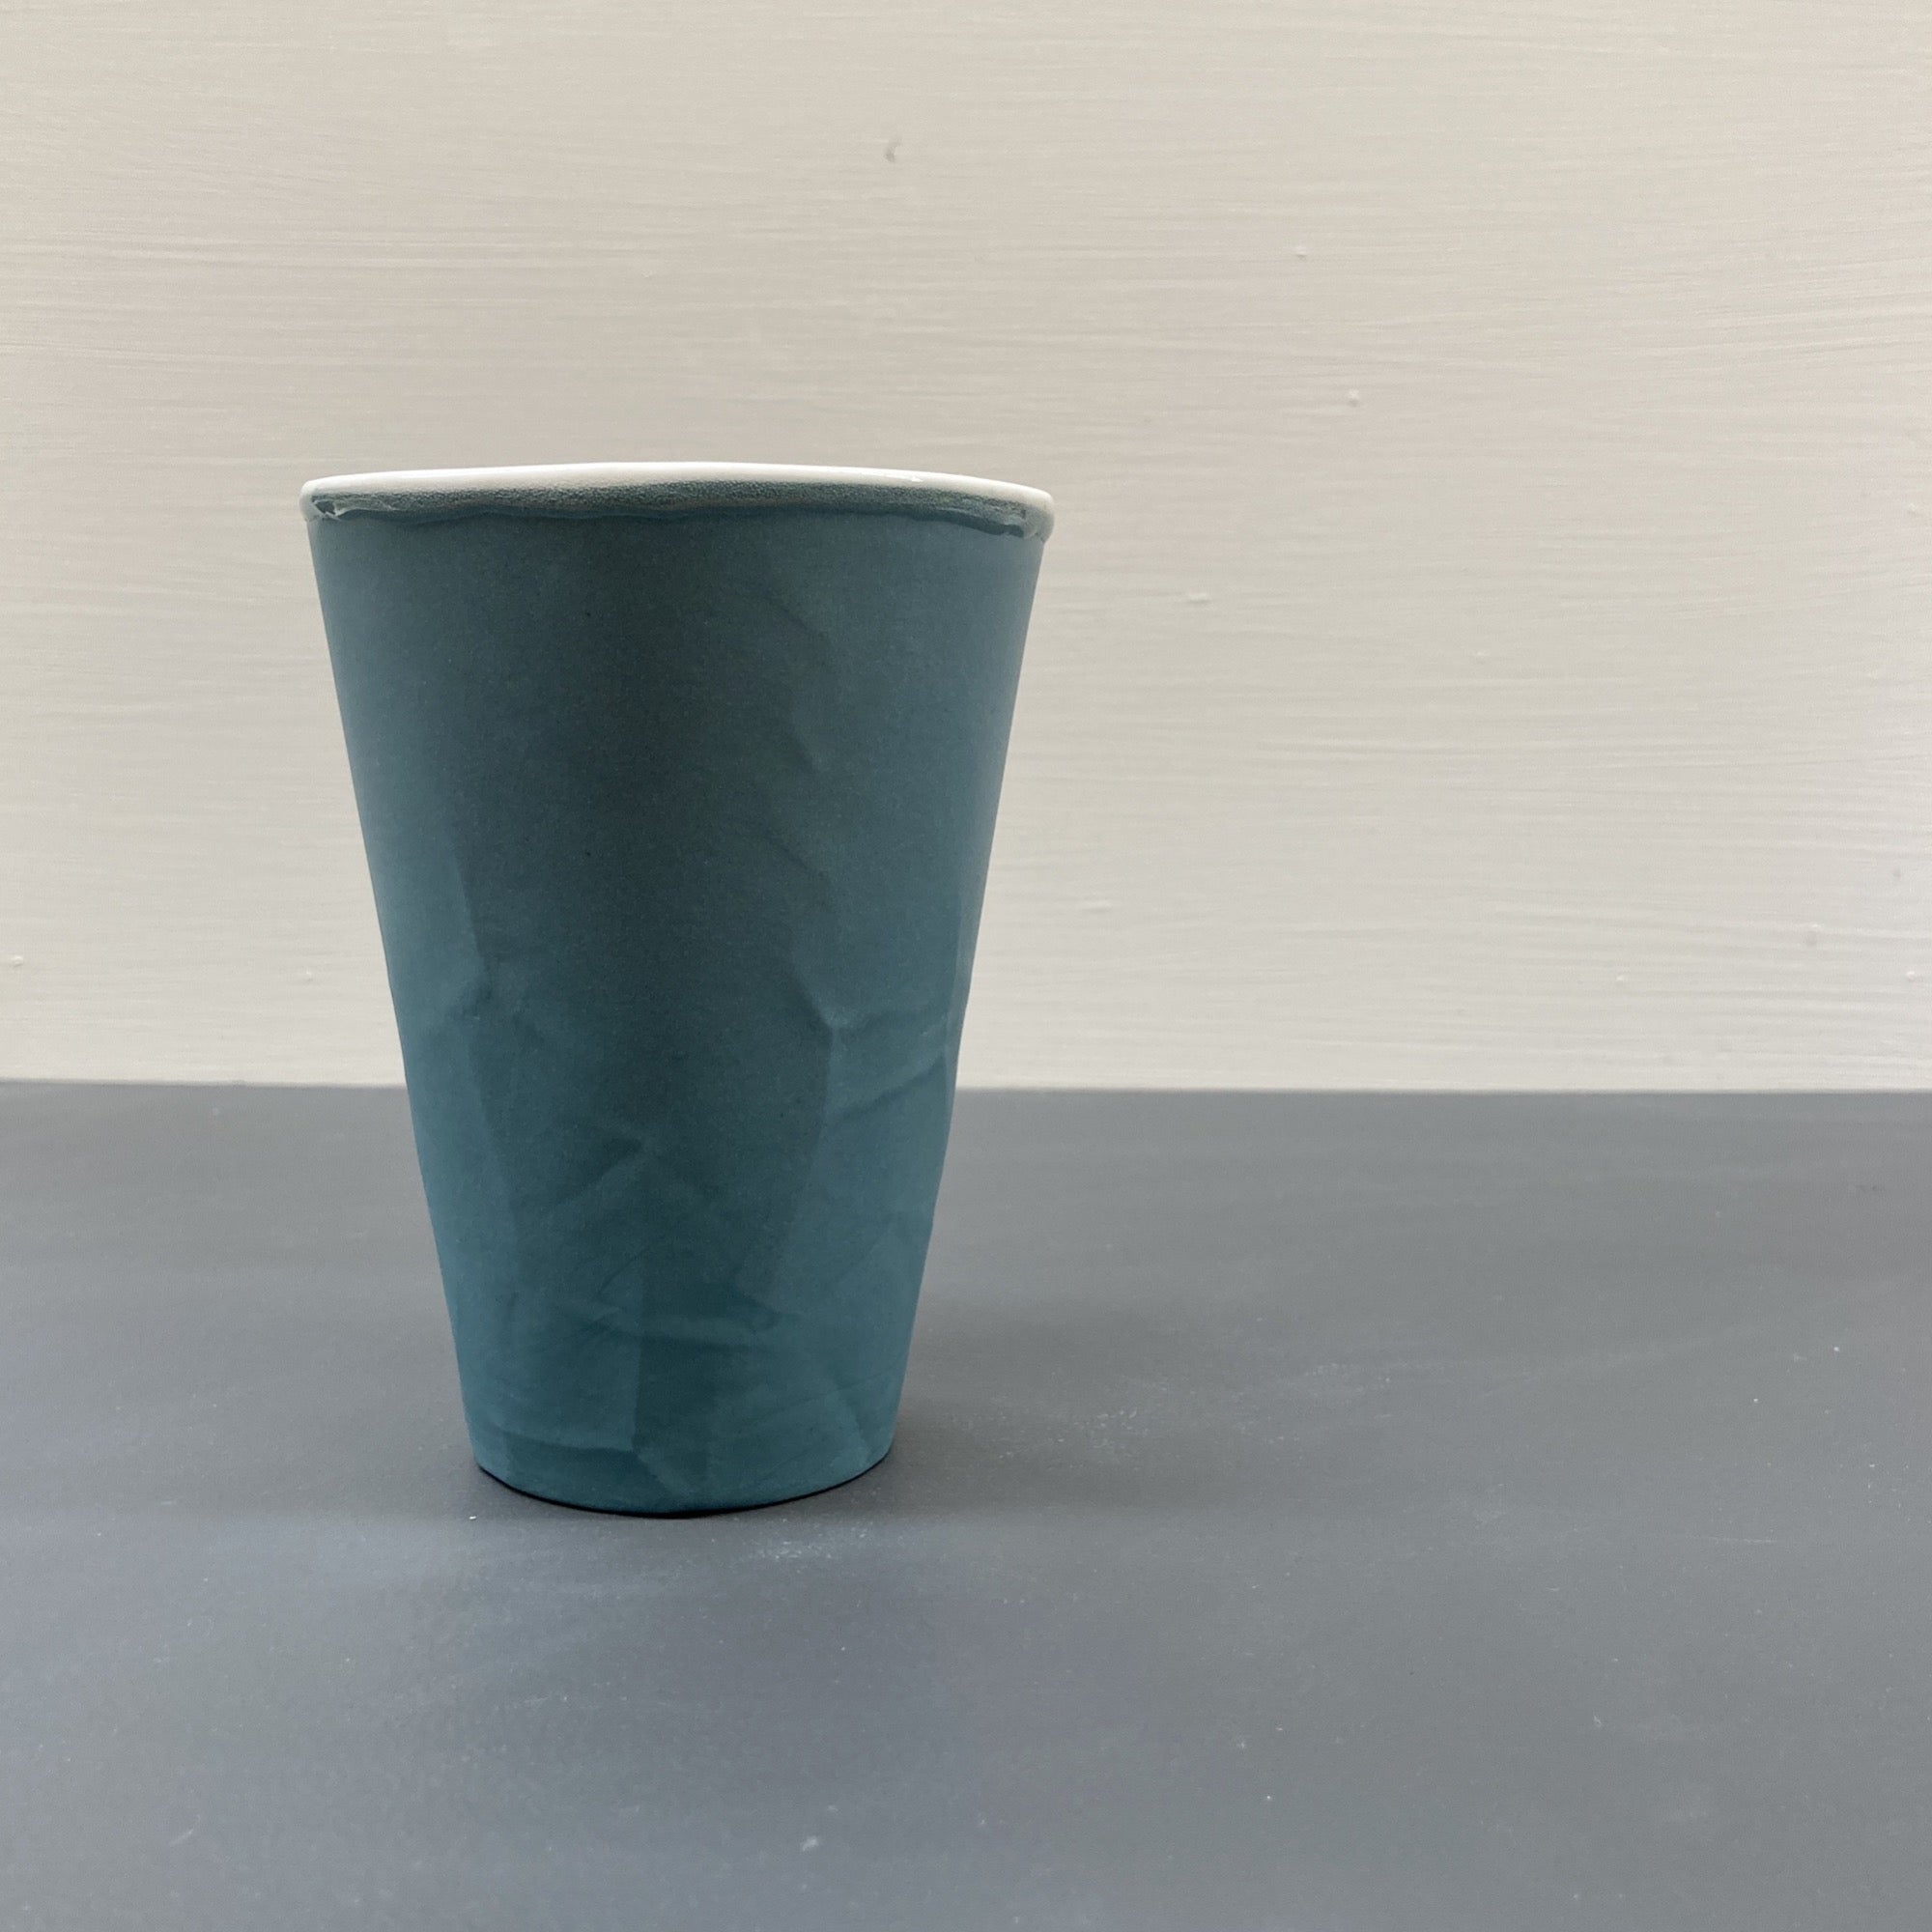 Ceramic Teal Paper Series Keep Cup